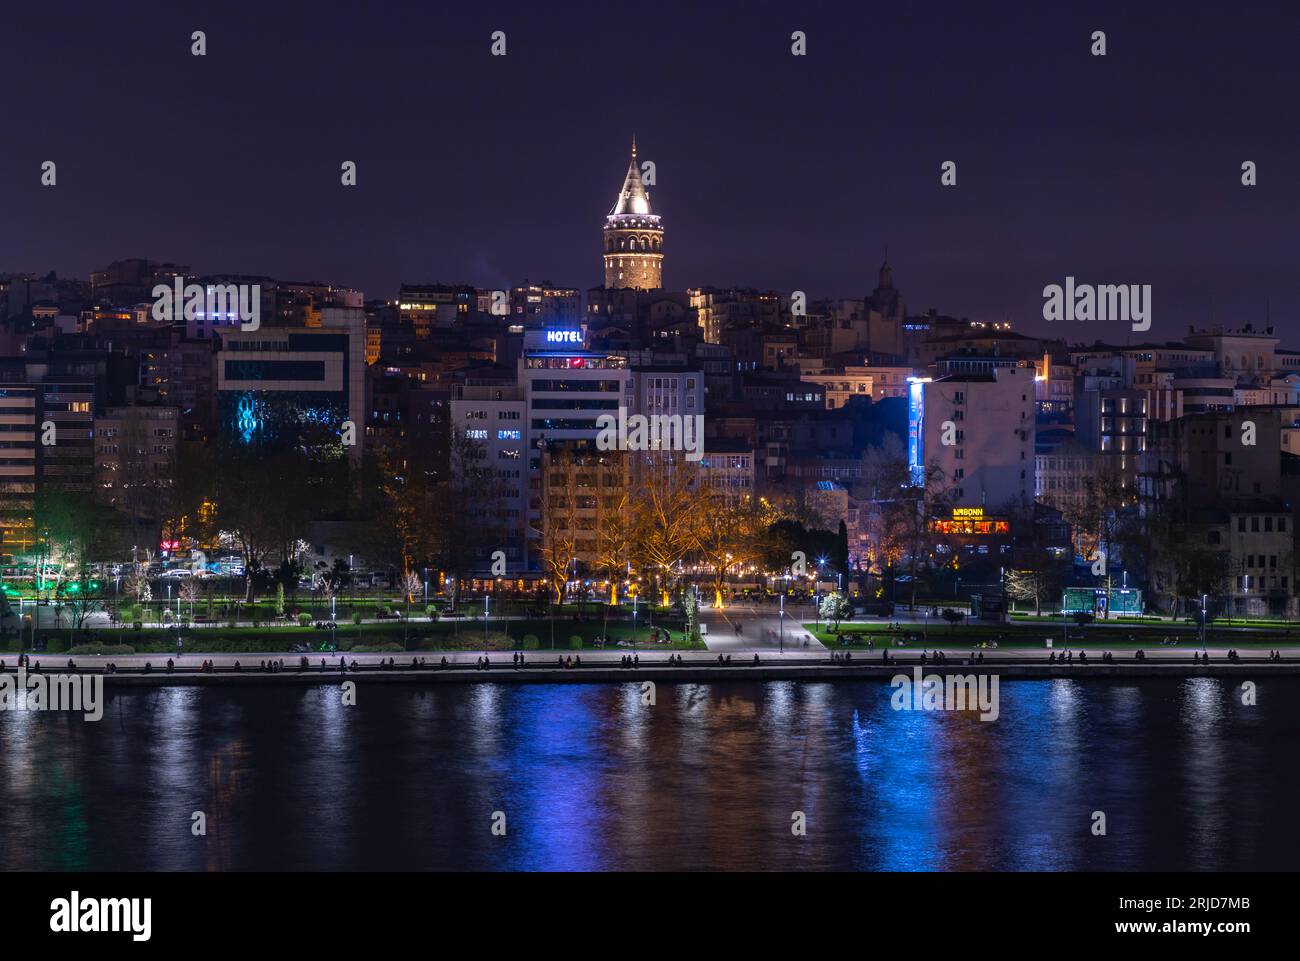 Ein Bild des Beyoglu-Viertels am Ufer und des Galata-Turms bei Nacht. Stockfoto